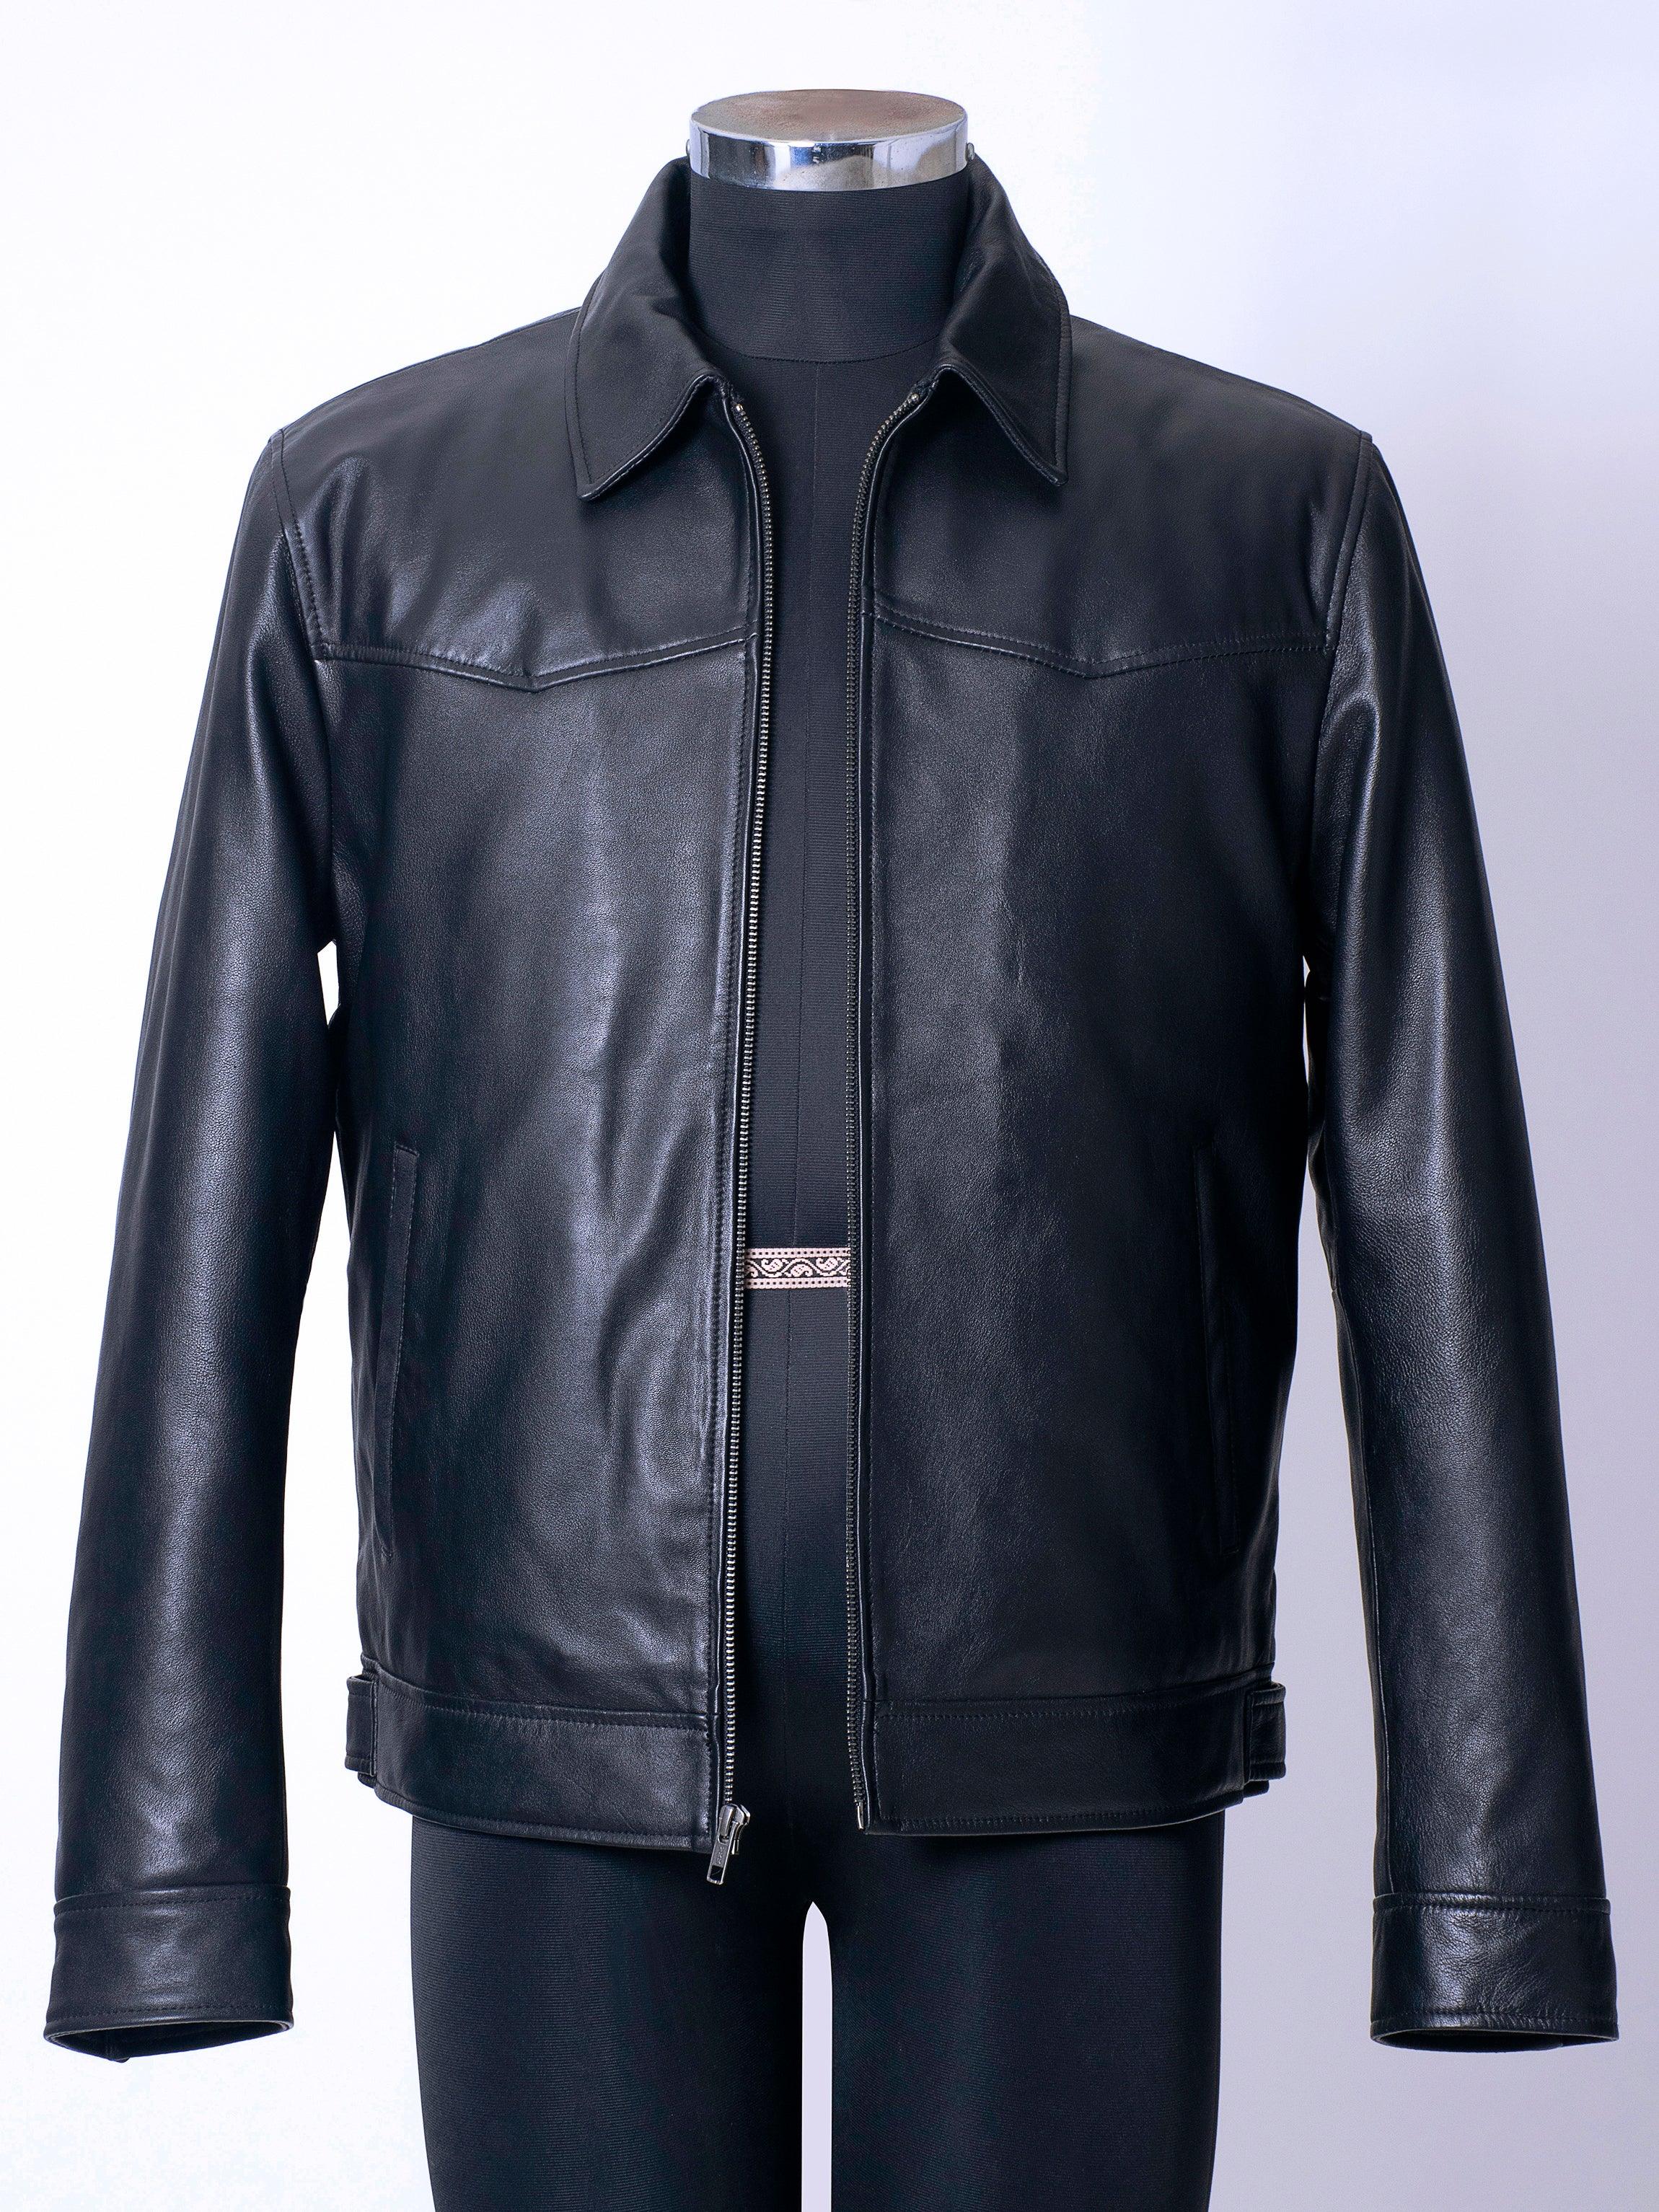 Buy Online Original Leather Jacket for Men – Shandar Sale